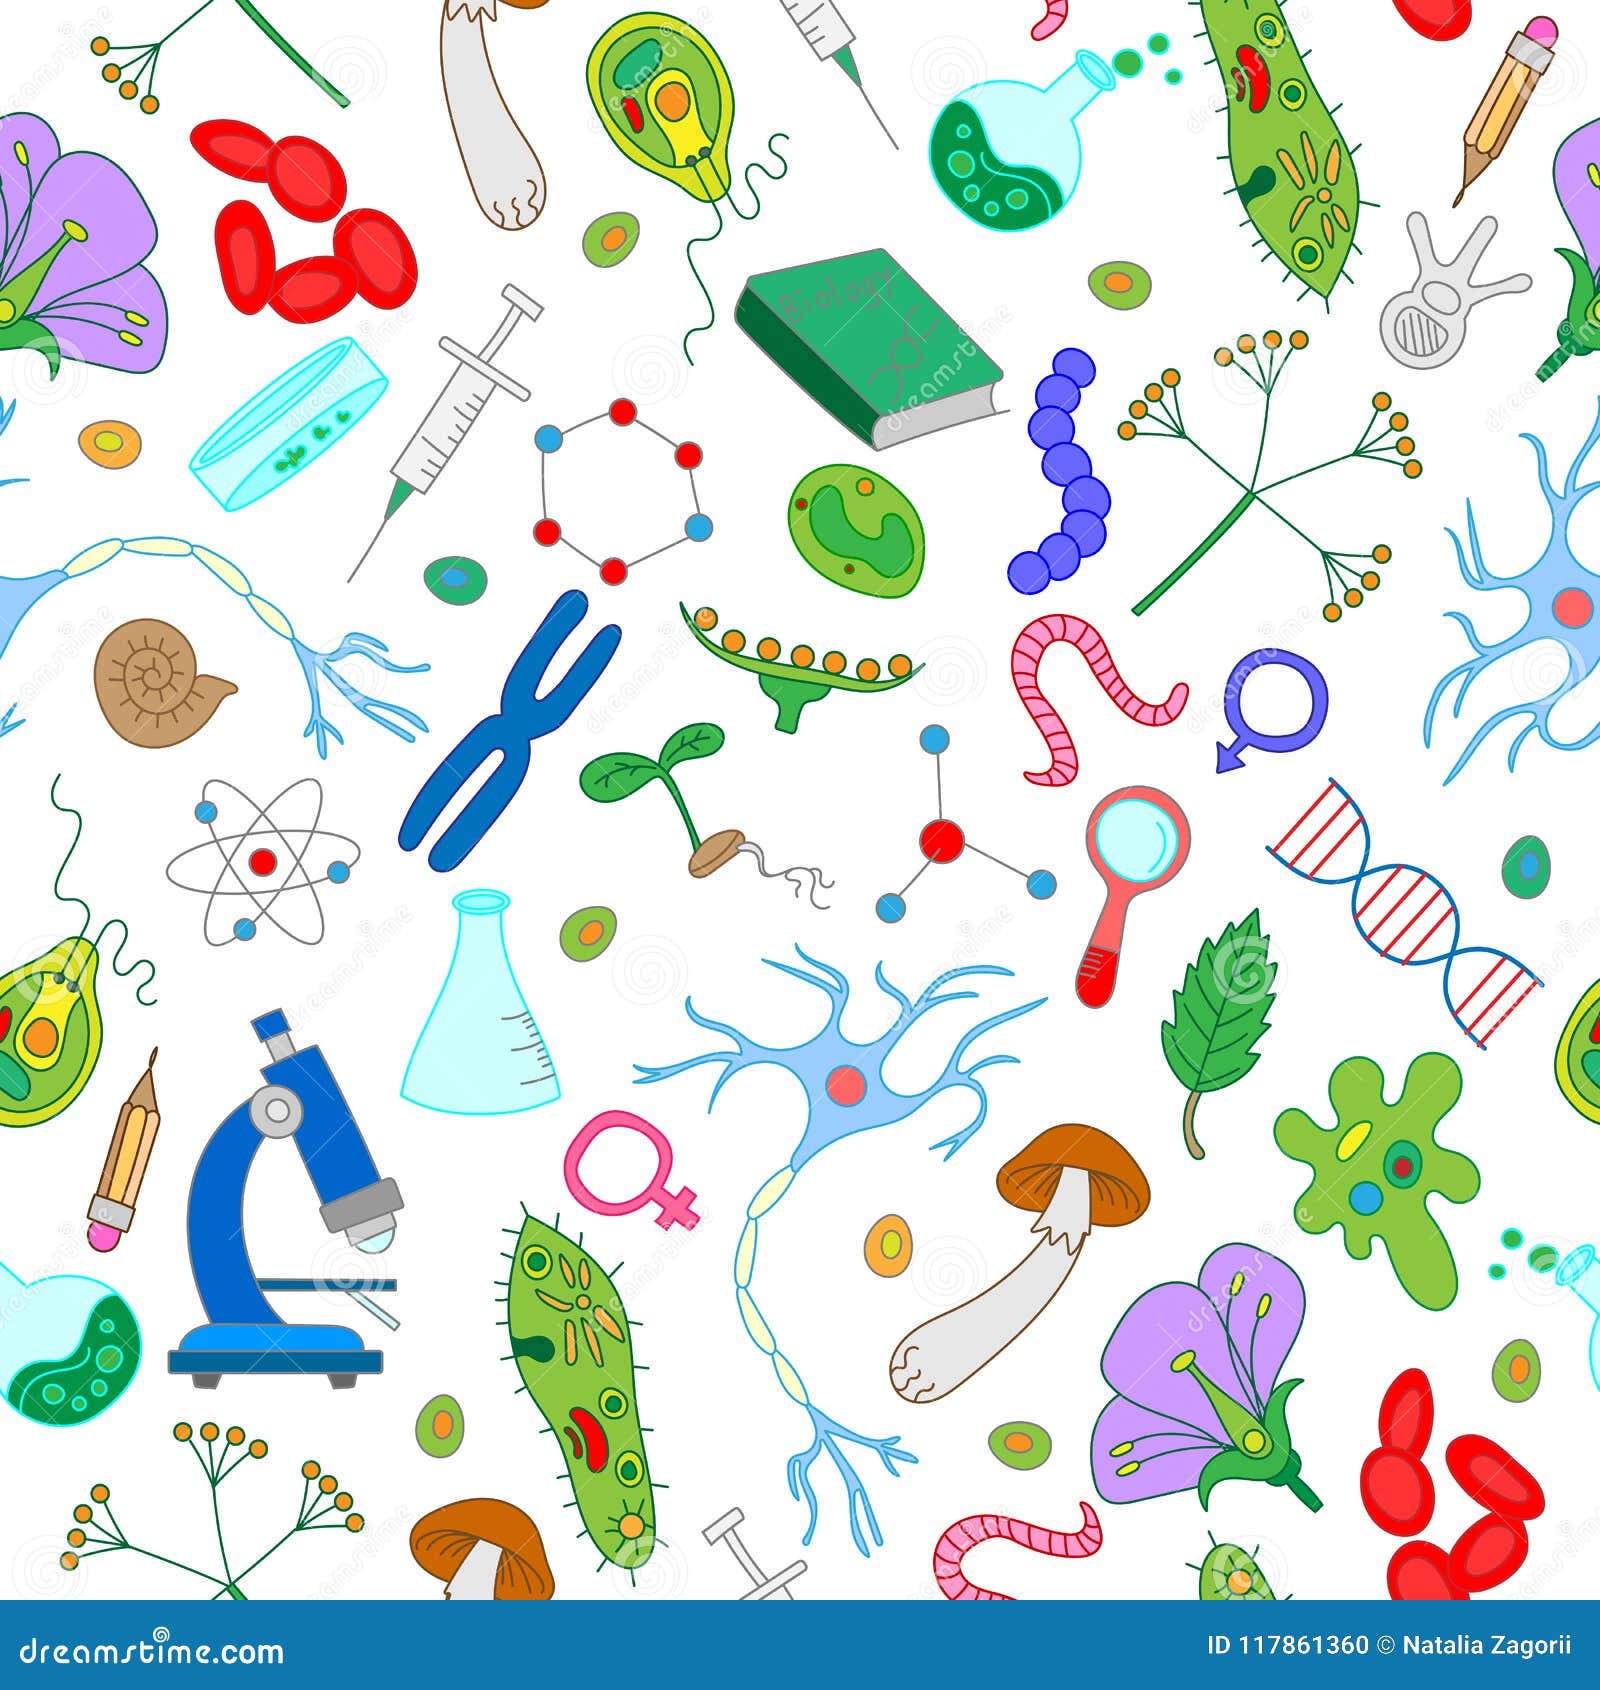 Compartir más de 108 imagenes de fondo biologia mejor .vn